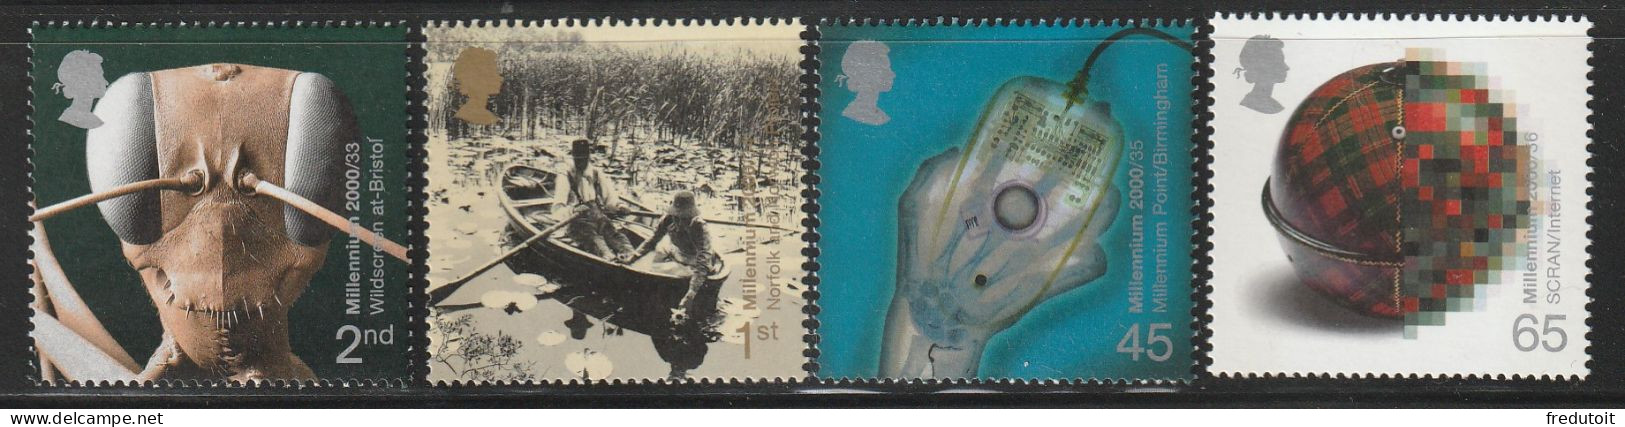 GRANDE BRETAGNE - N°2199/2202 ** (2000) Nouveau Millénaire (IX) - Unused Stamps